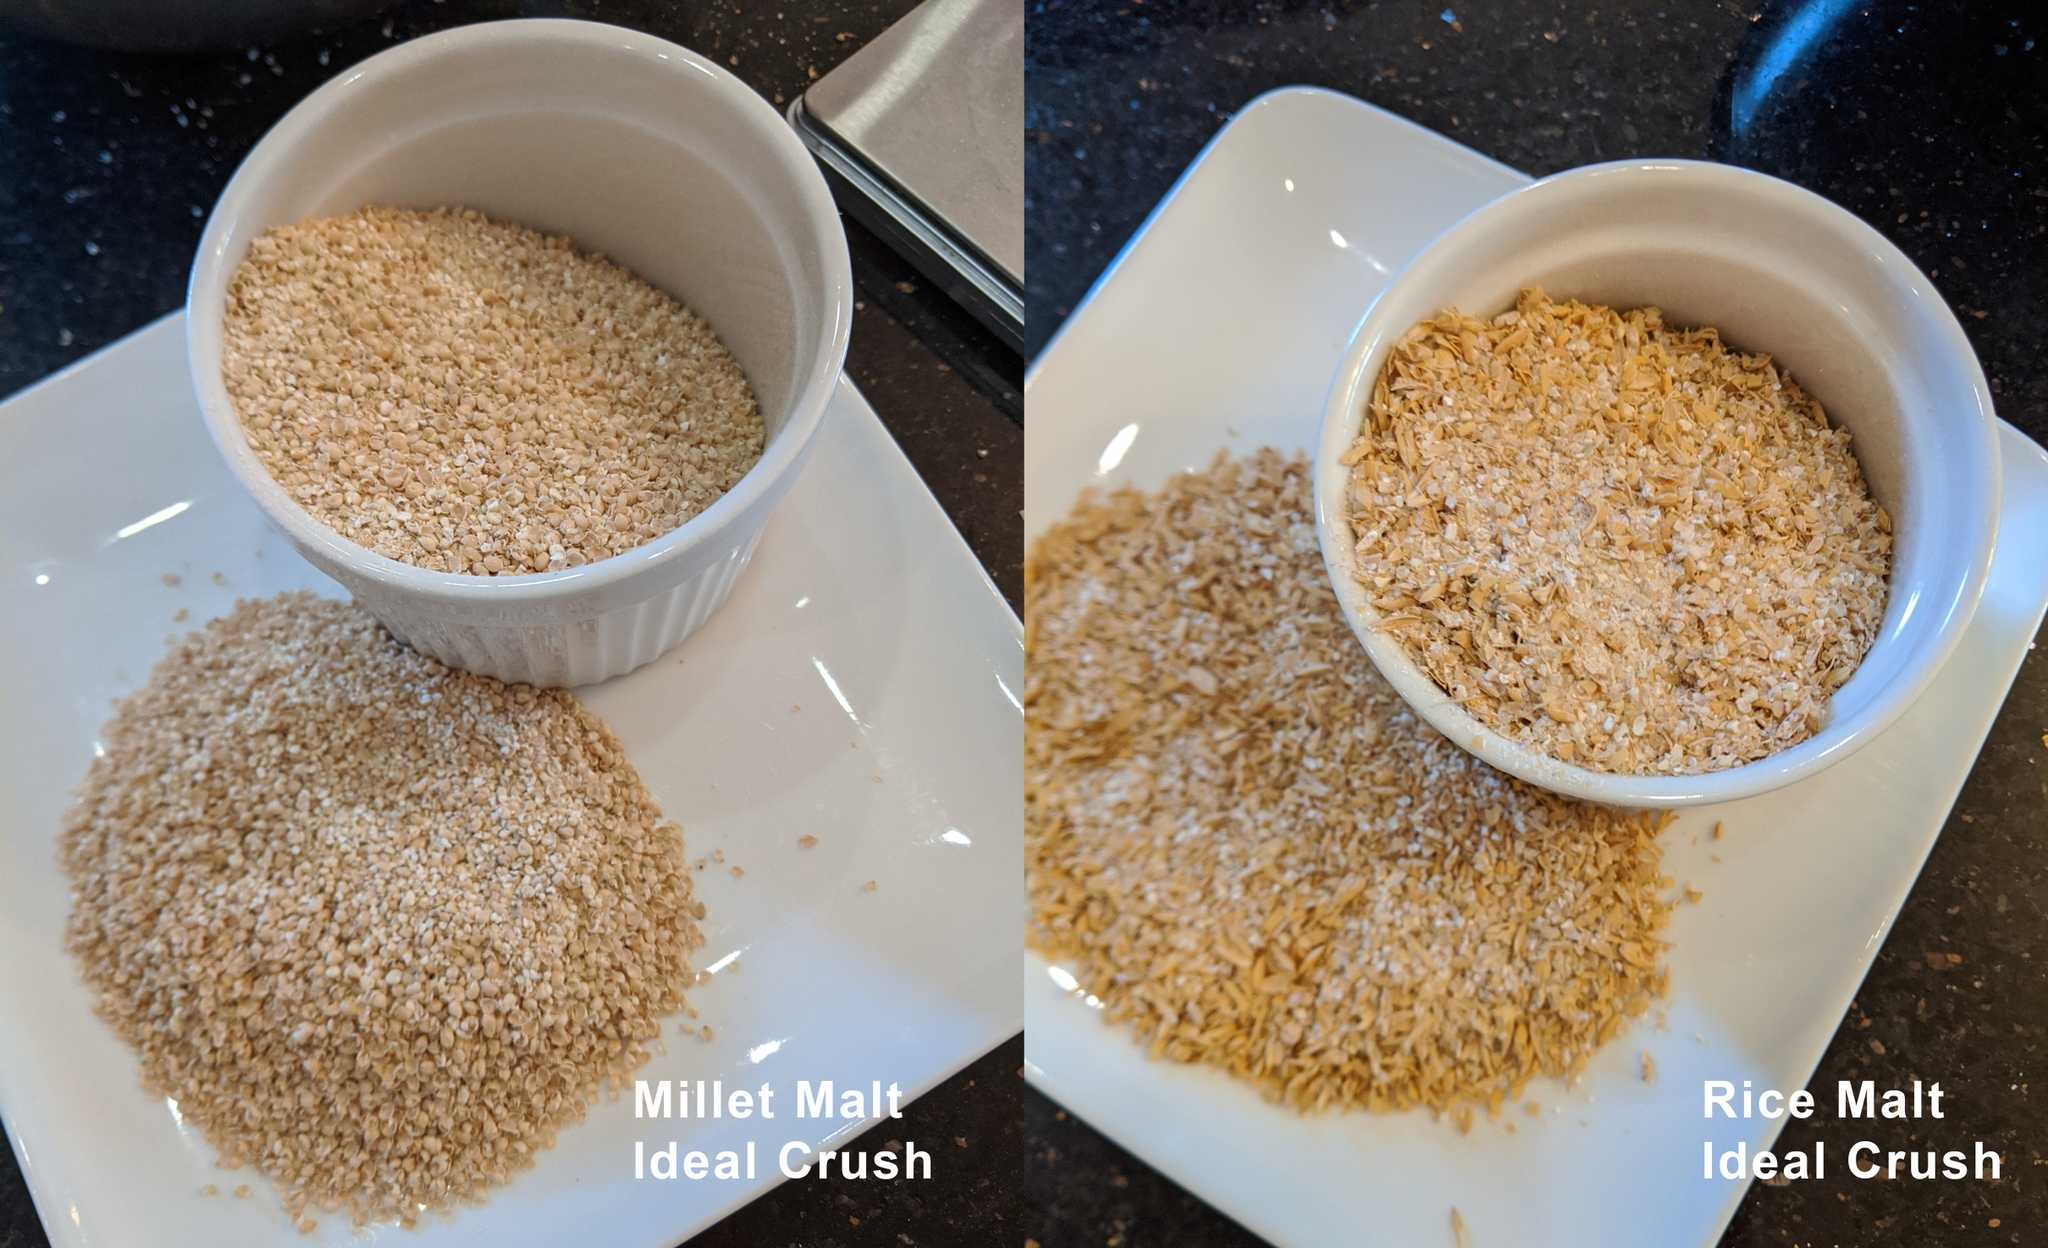 Photos of properly crushed malt